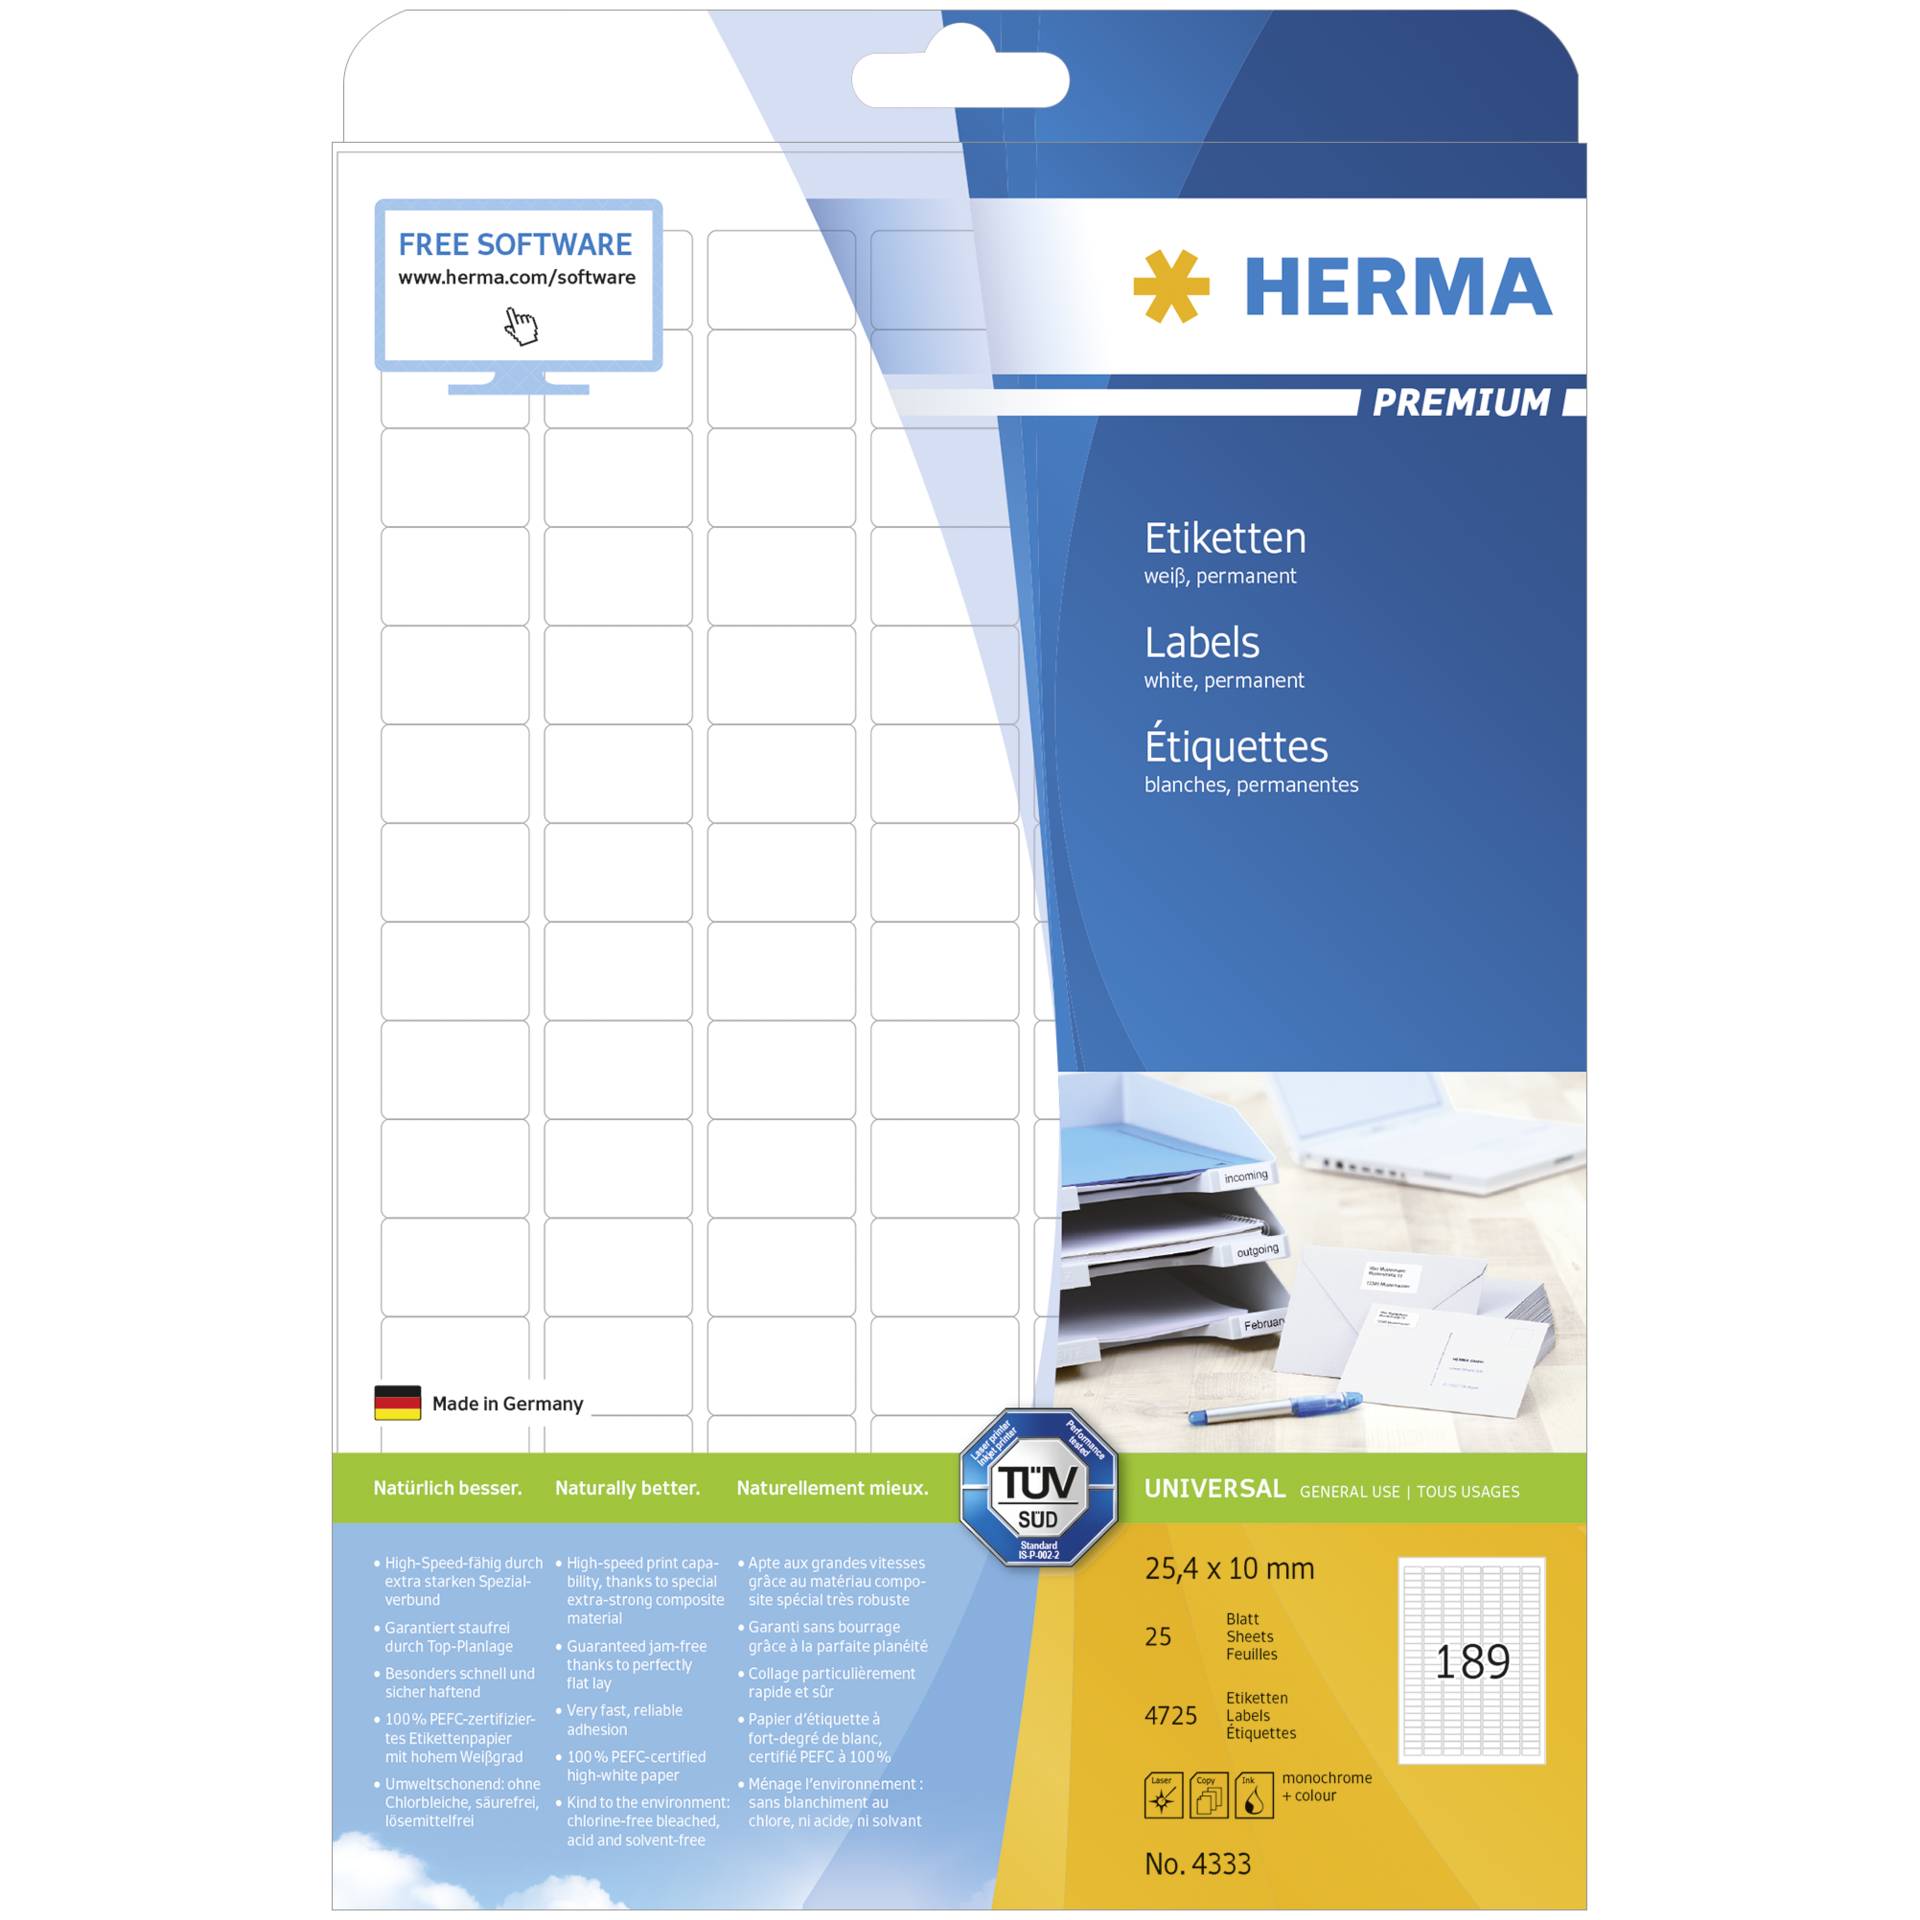 Herma Prem. etichette 25,4x10 25 fogli DIN A4 4725 pezzi 433